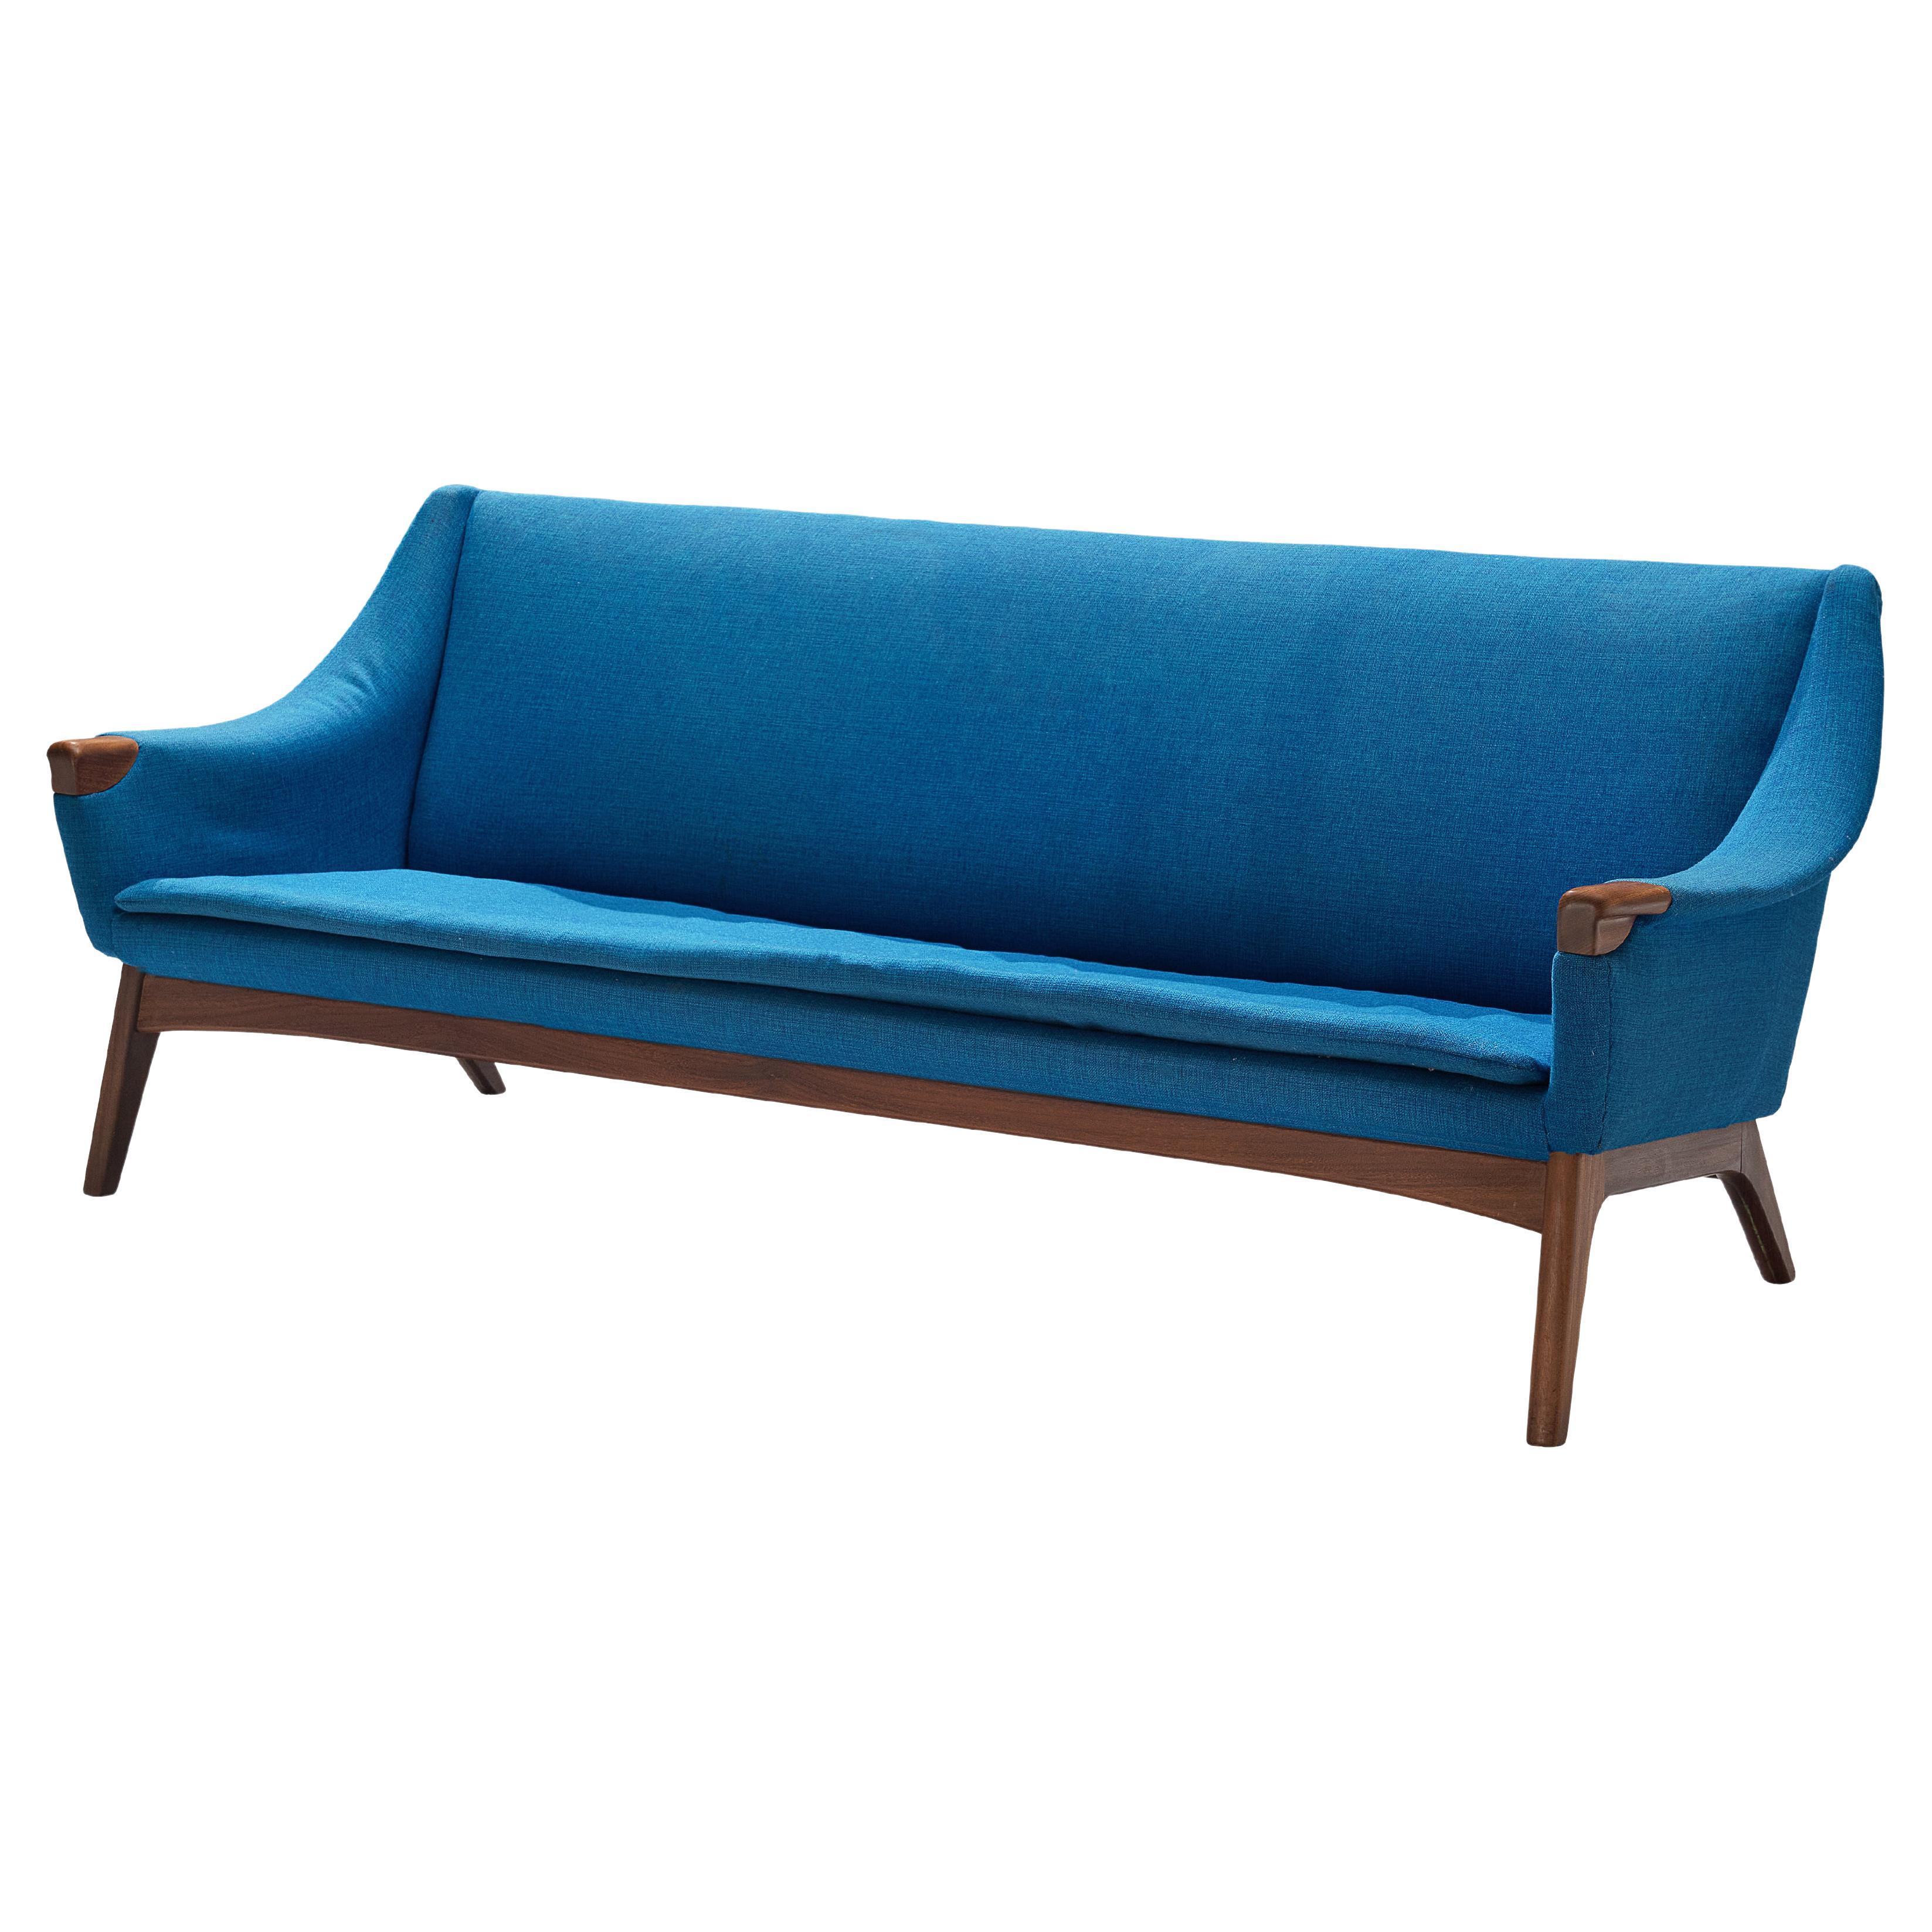 Dänisches Sofa aus Teakholz mit blauer Polsterung